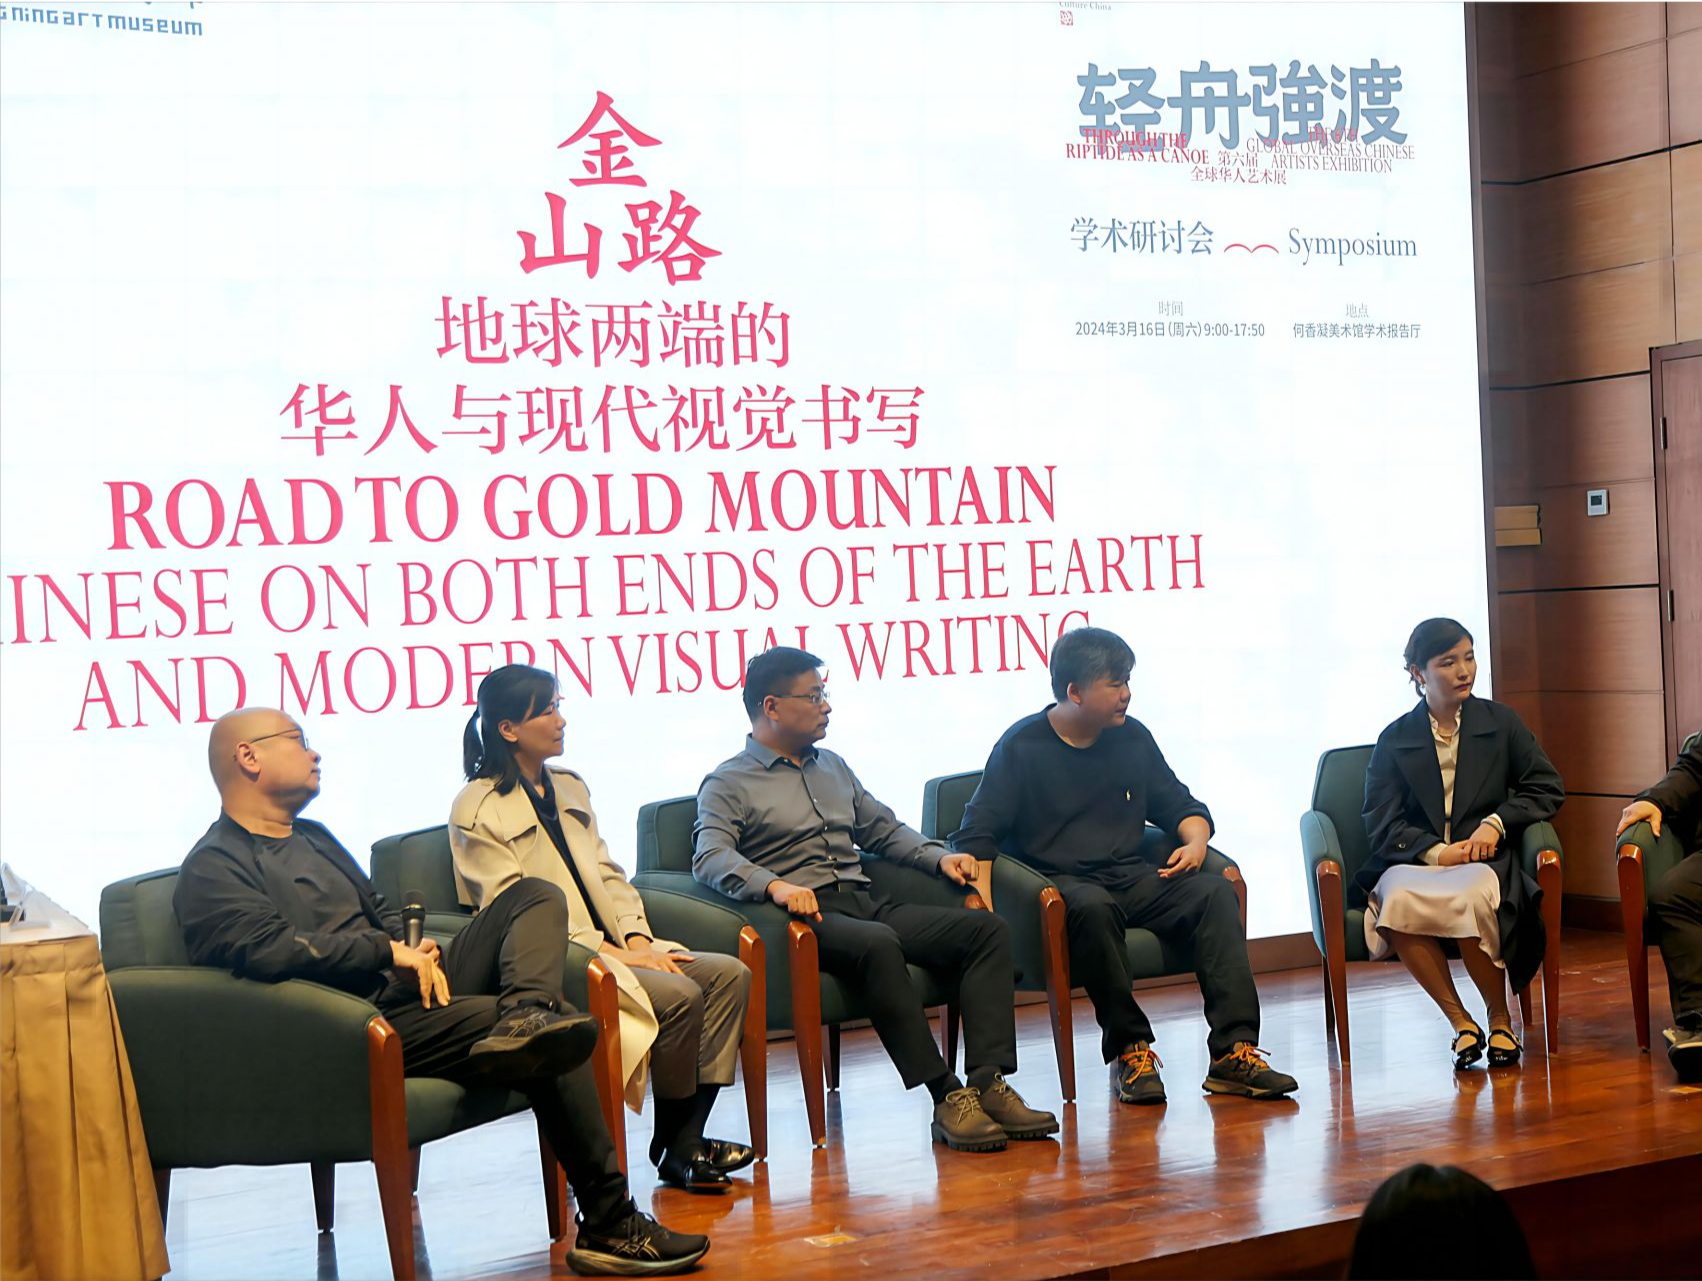 学者专家汇聚“地球两端的华人与现代视觉书写”学术研讨会